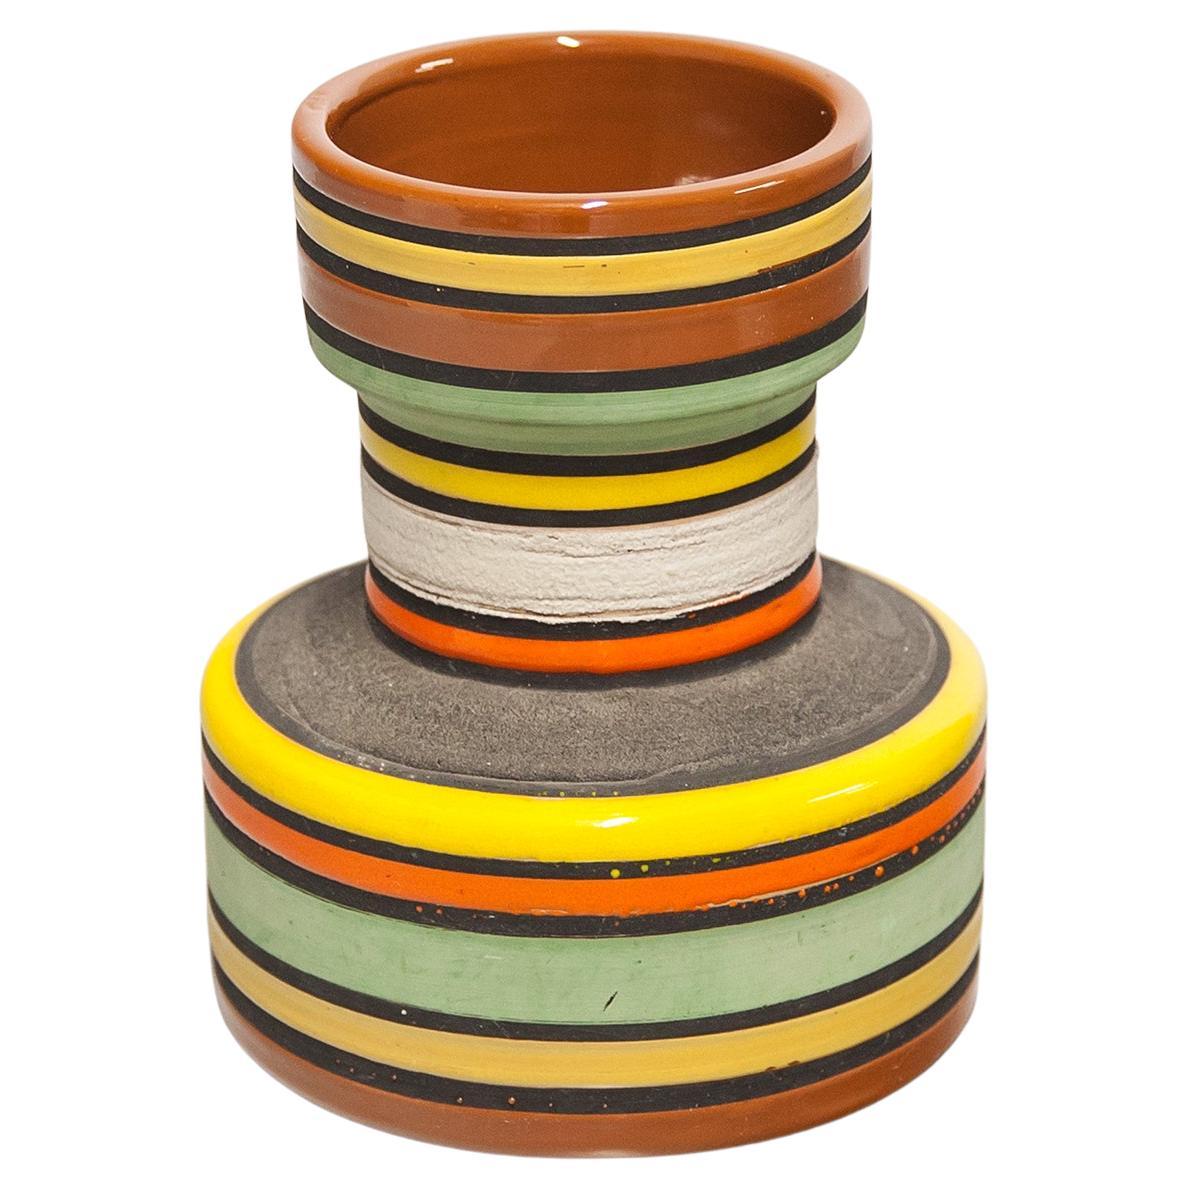 Aldo Londi Bitossi Raymor Ceramic Vase Orange Stripes Pottery Italy 1960s For Sale